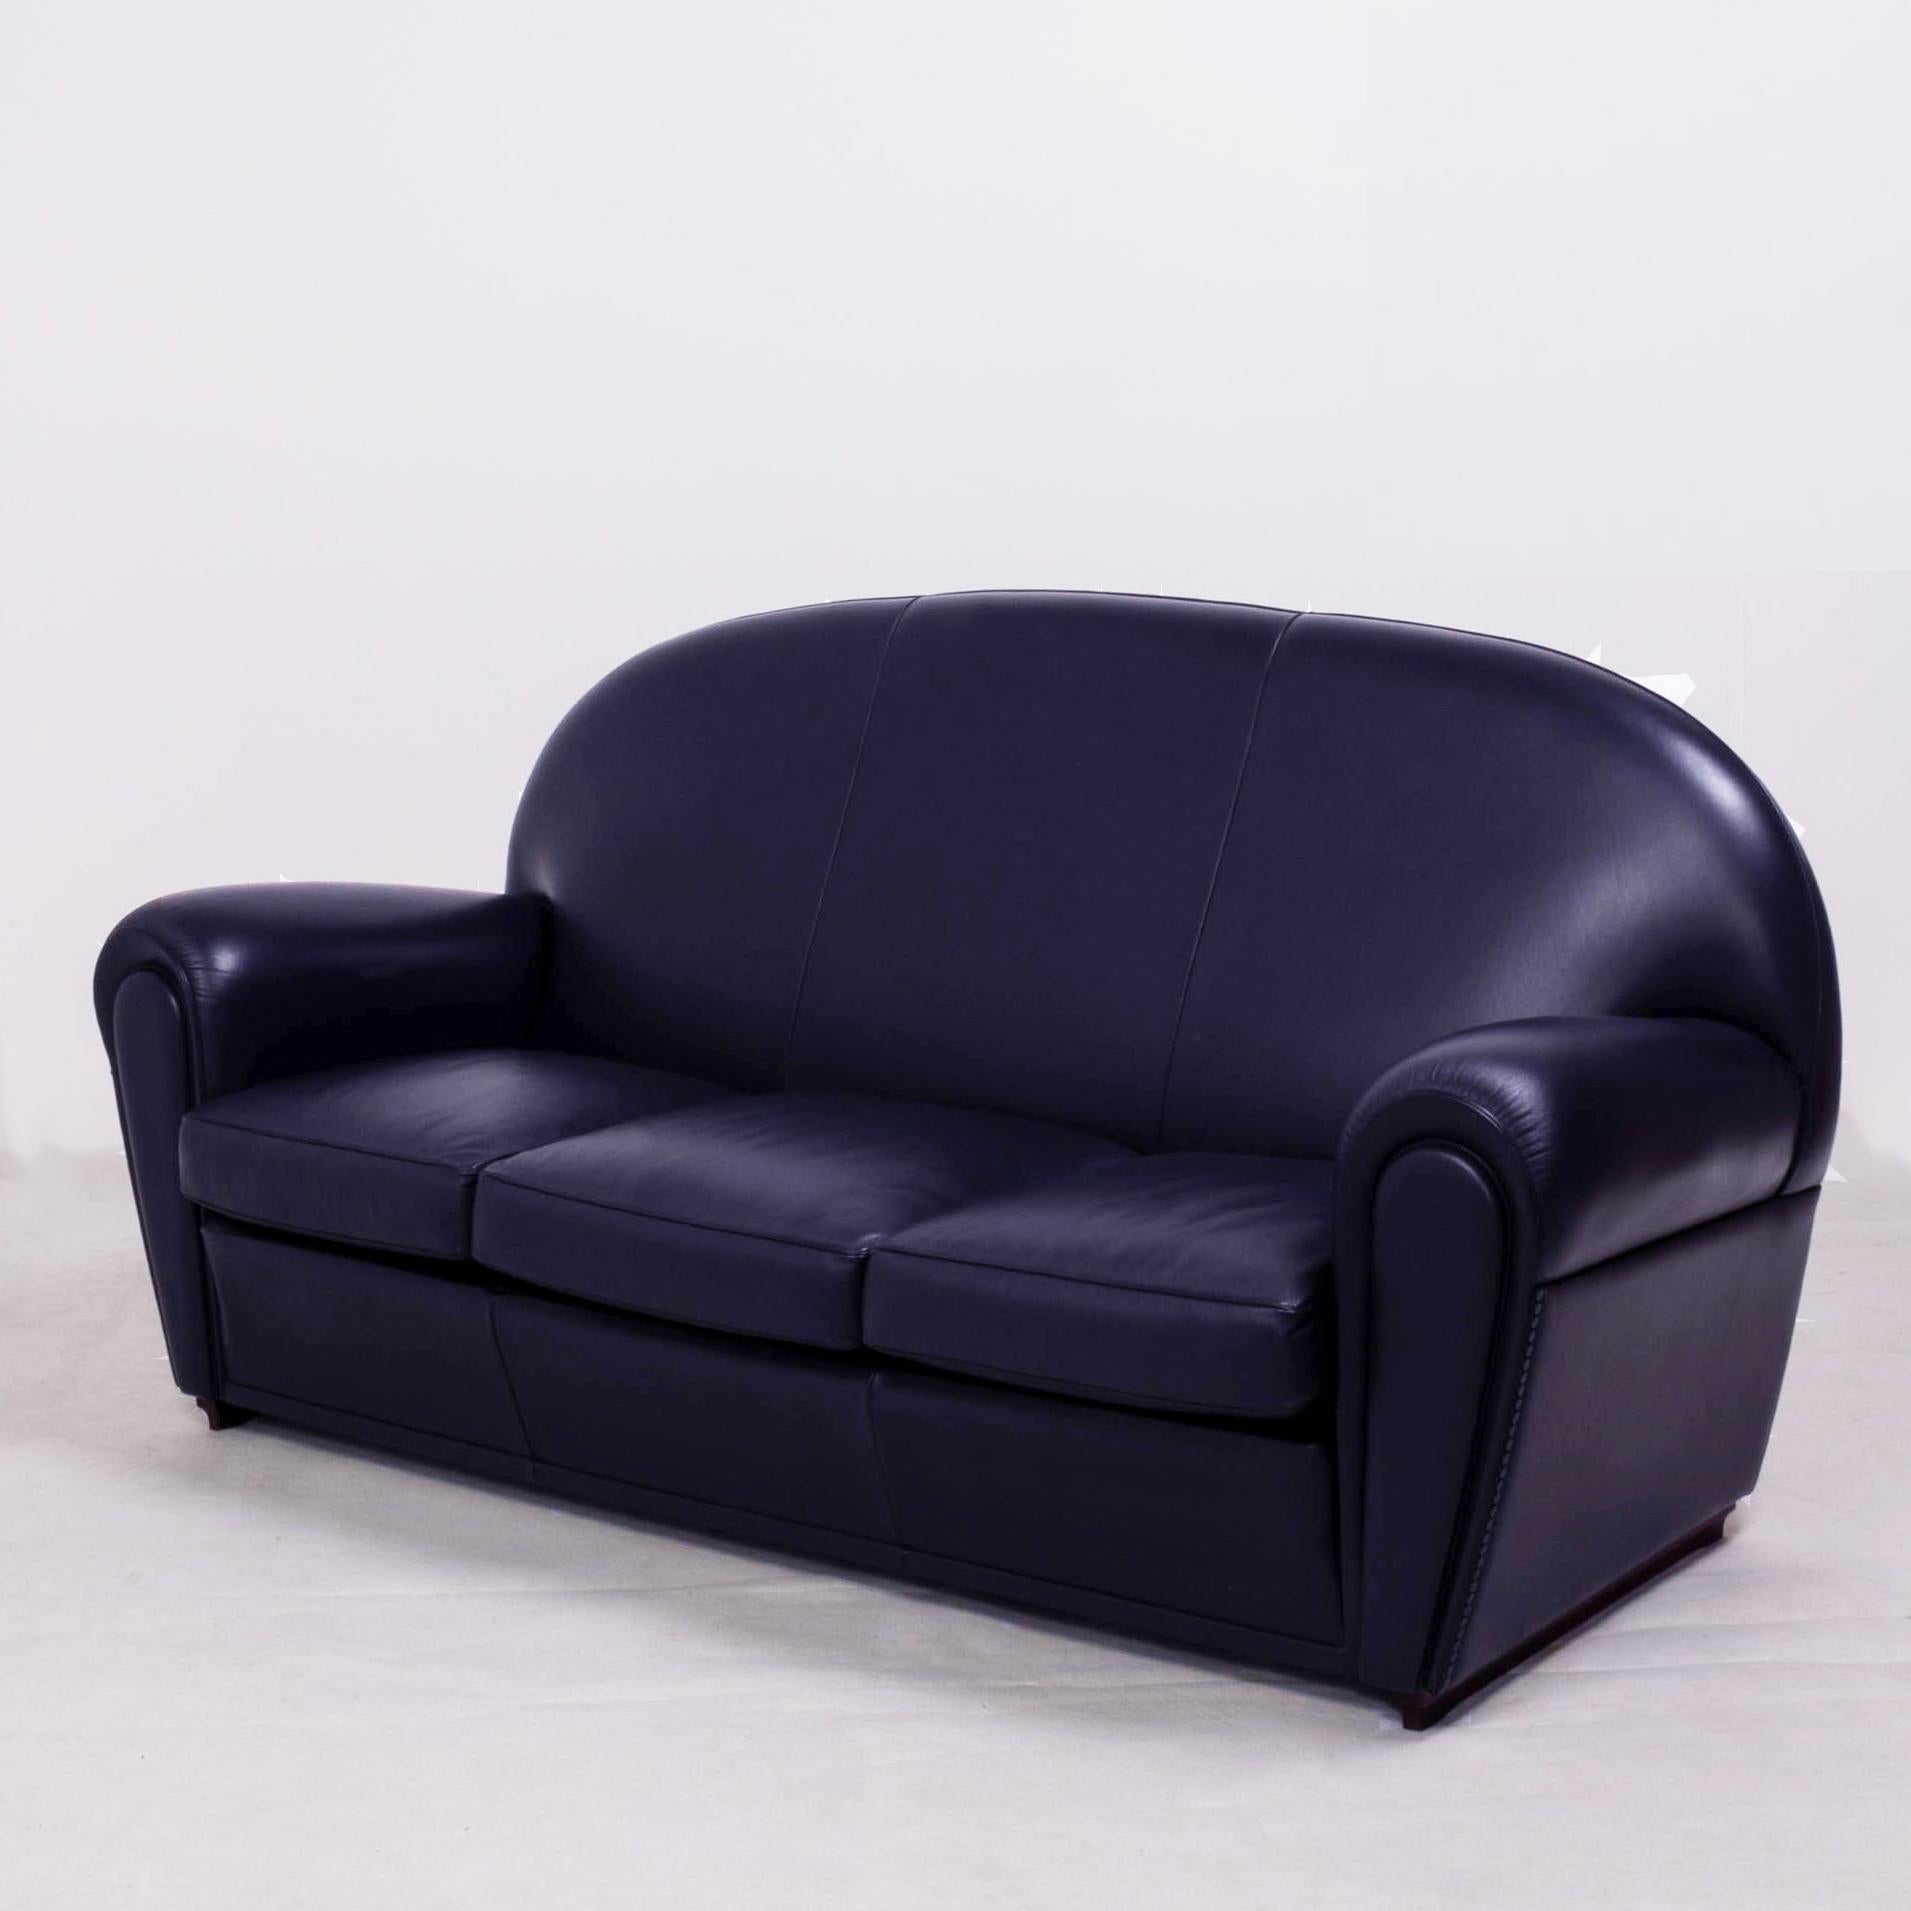 Italian Poltrona Frau, Art Deco style Vanity Fair Black Leather Sofa and armchairs set